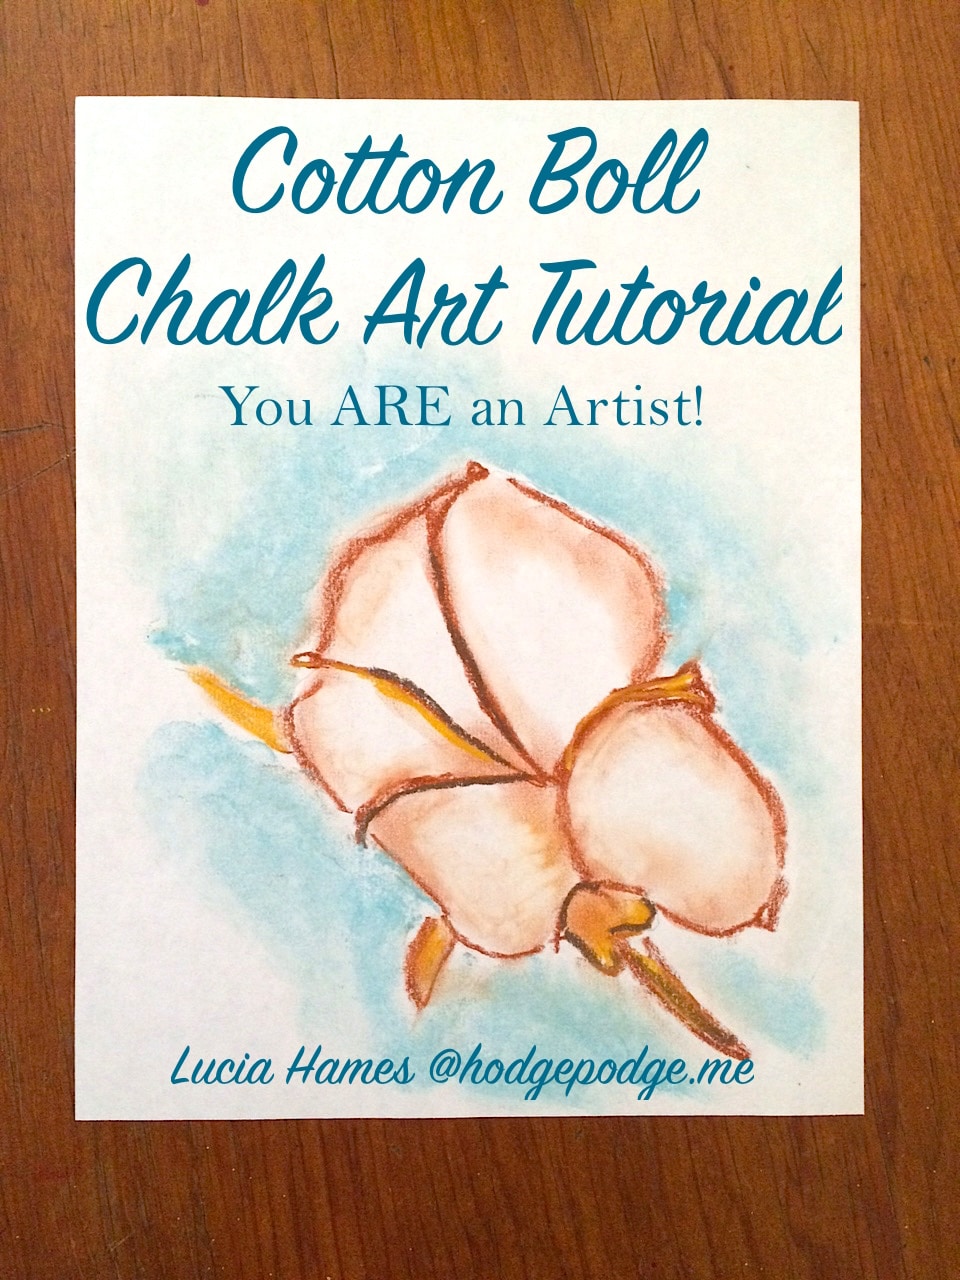 Georgia Cotton Boll Chalk Art Tutorial